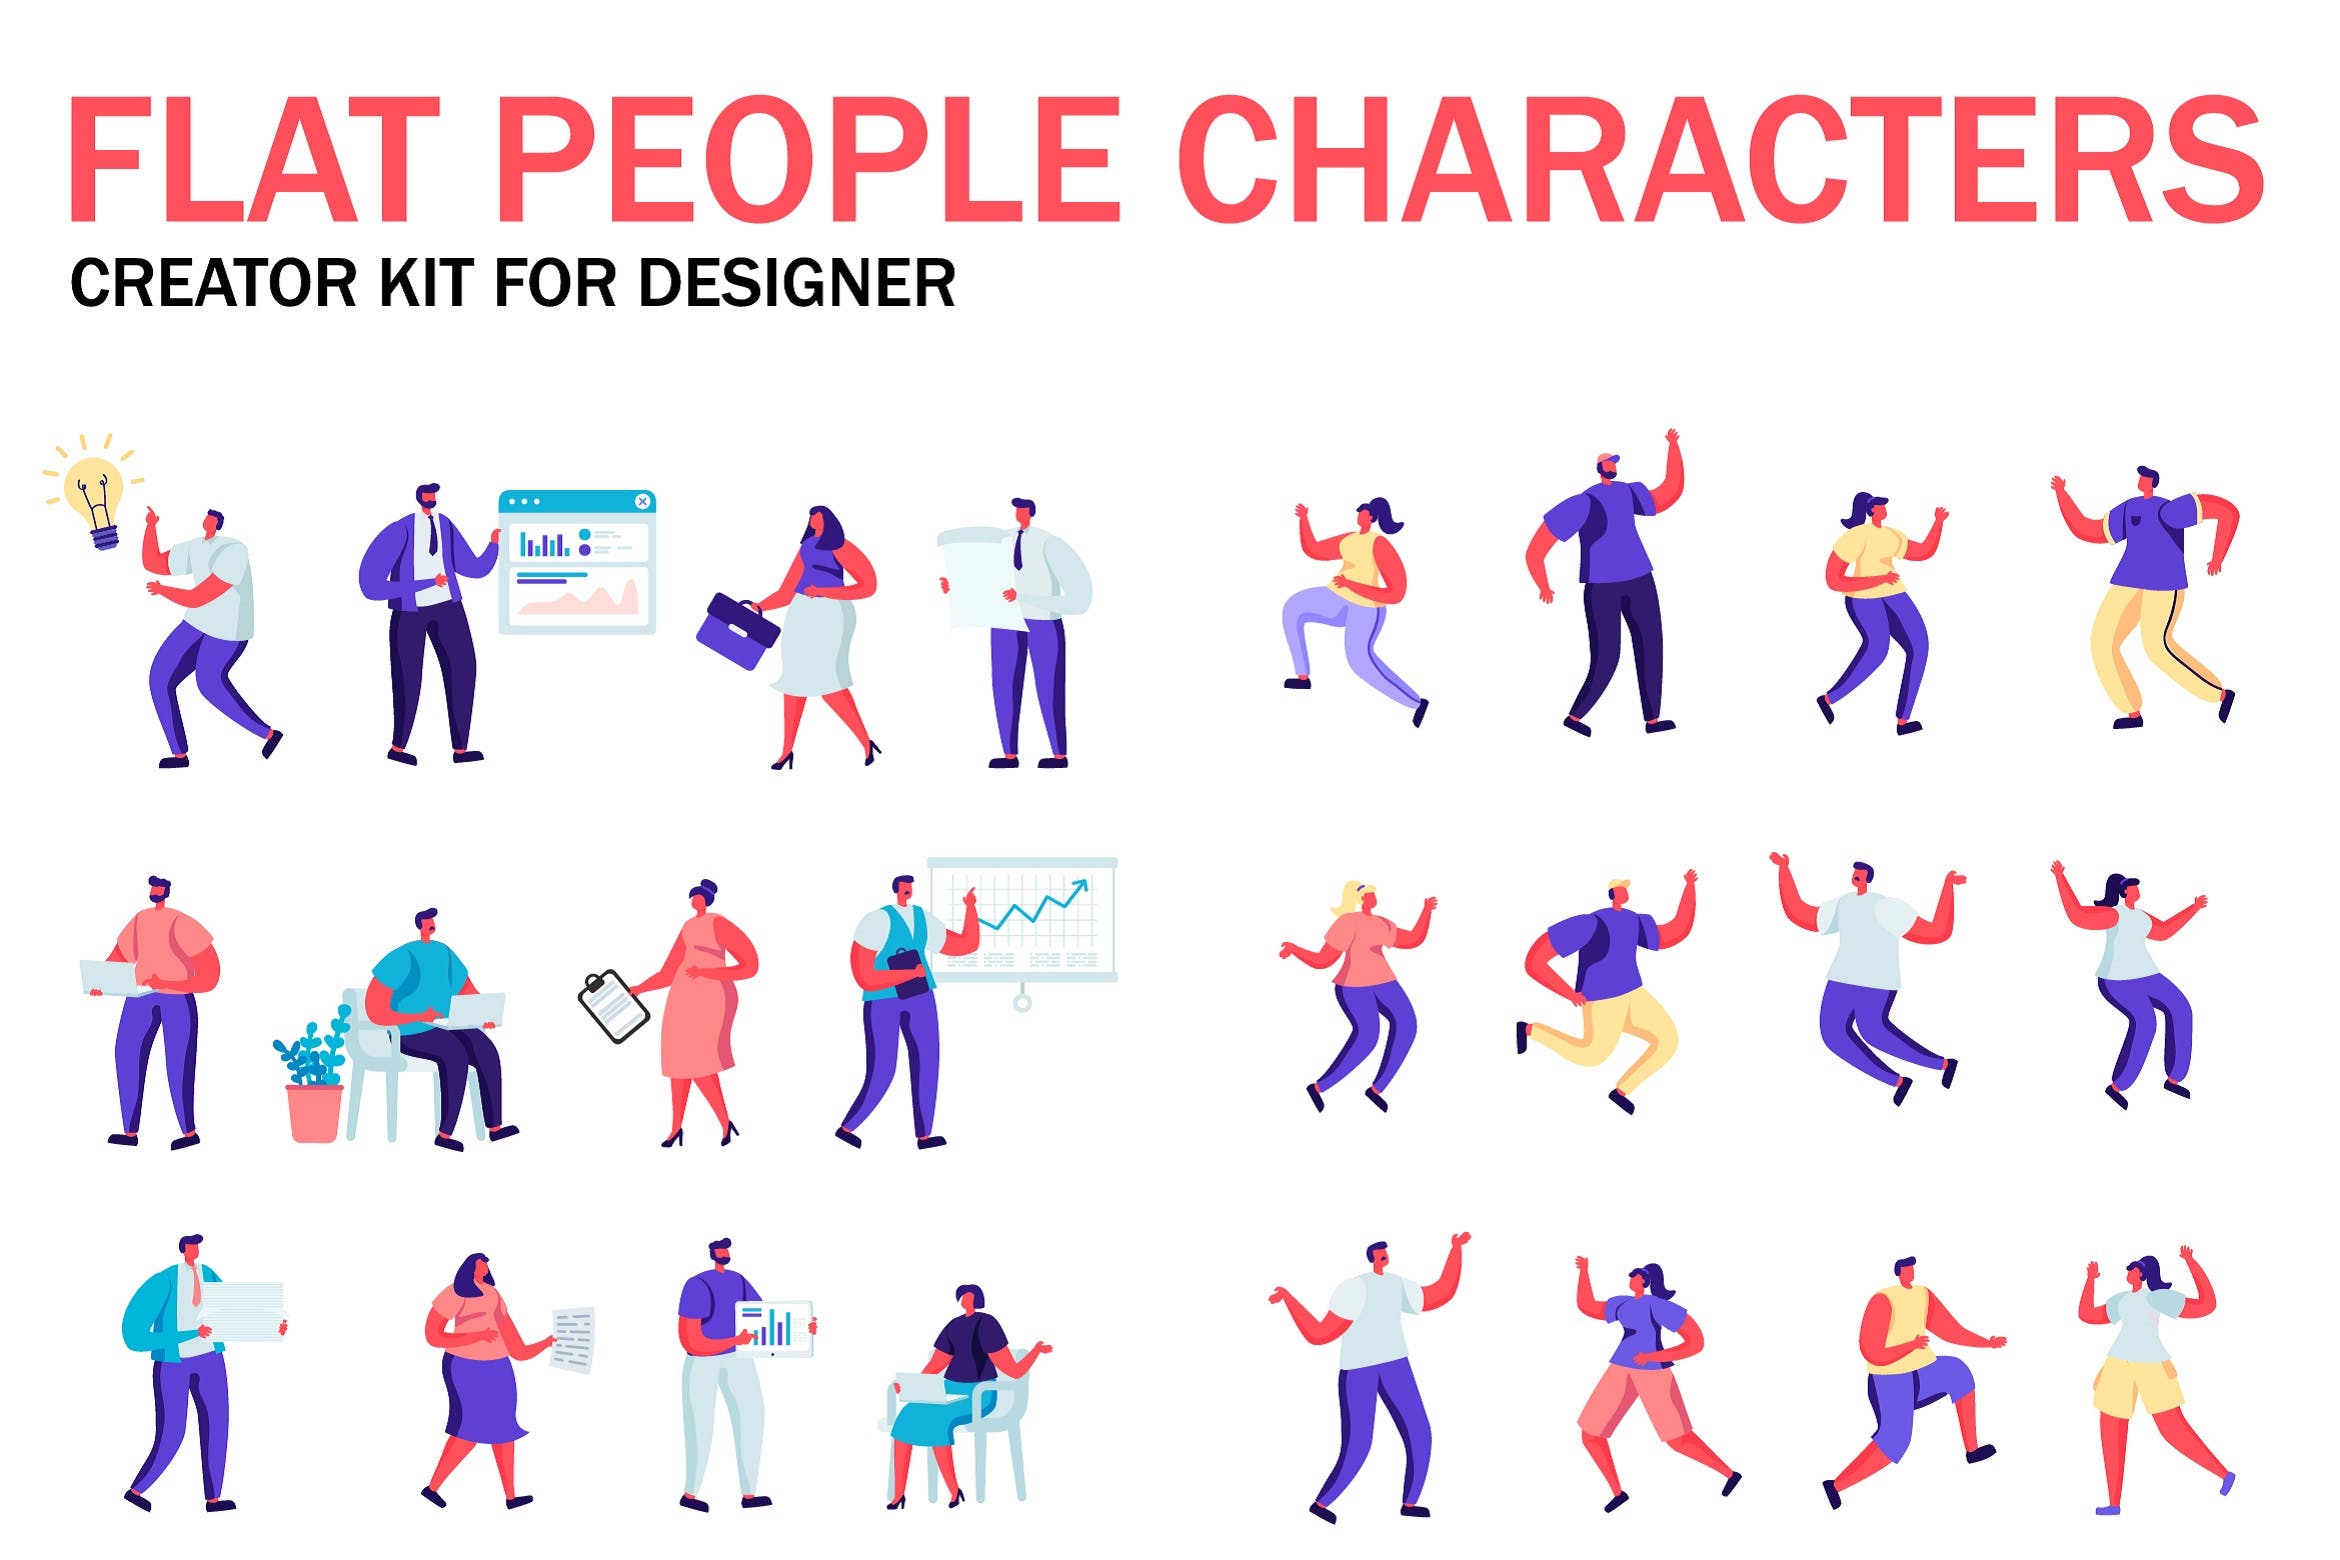 扁平化设计风格虚拟人物角色图形设计工具包v1 Flat People Character Creator Kit插图